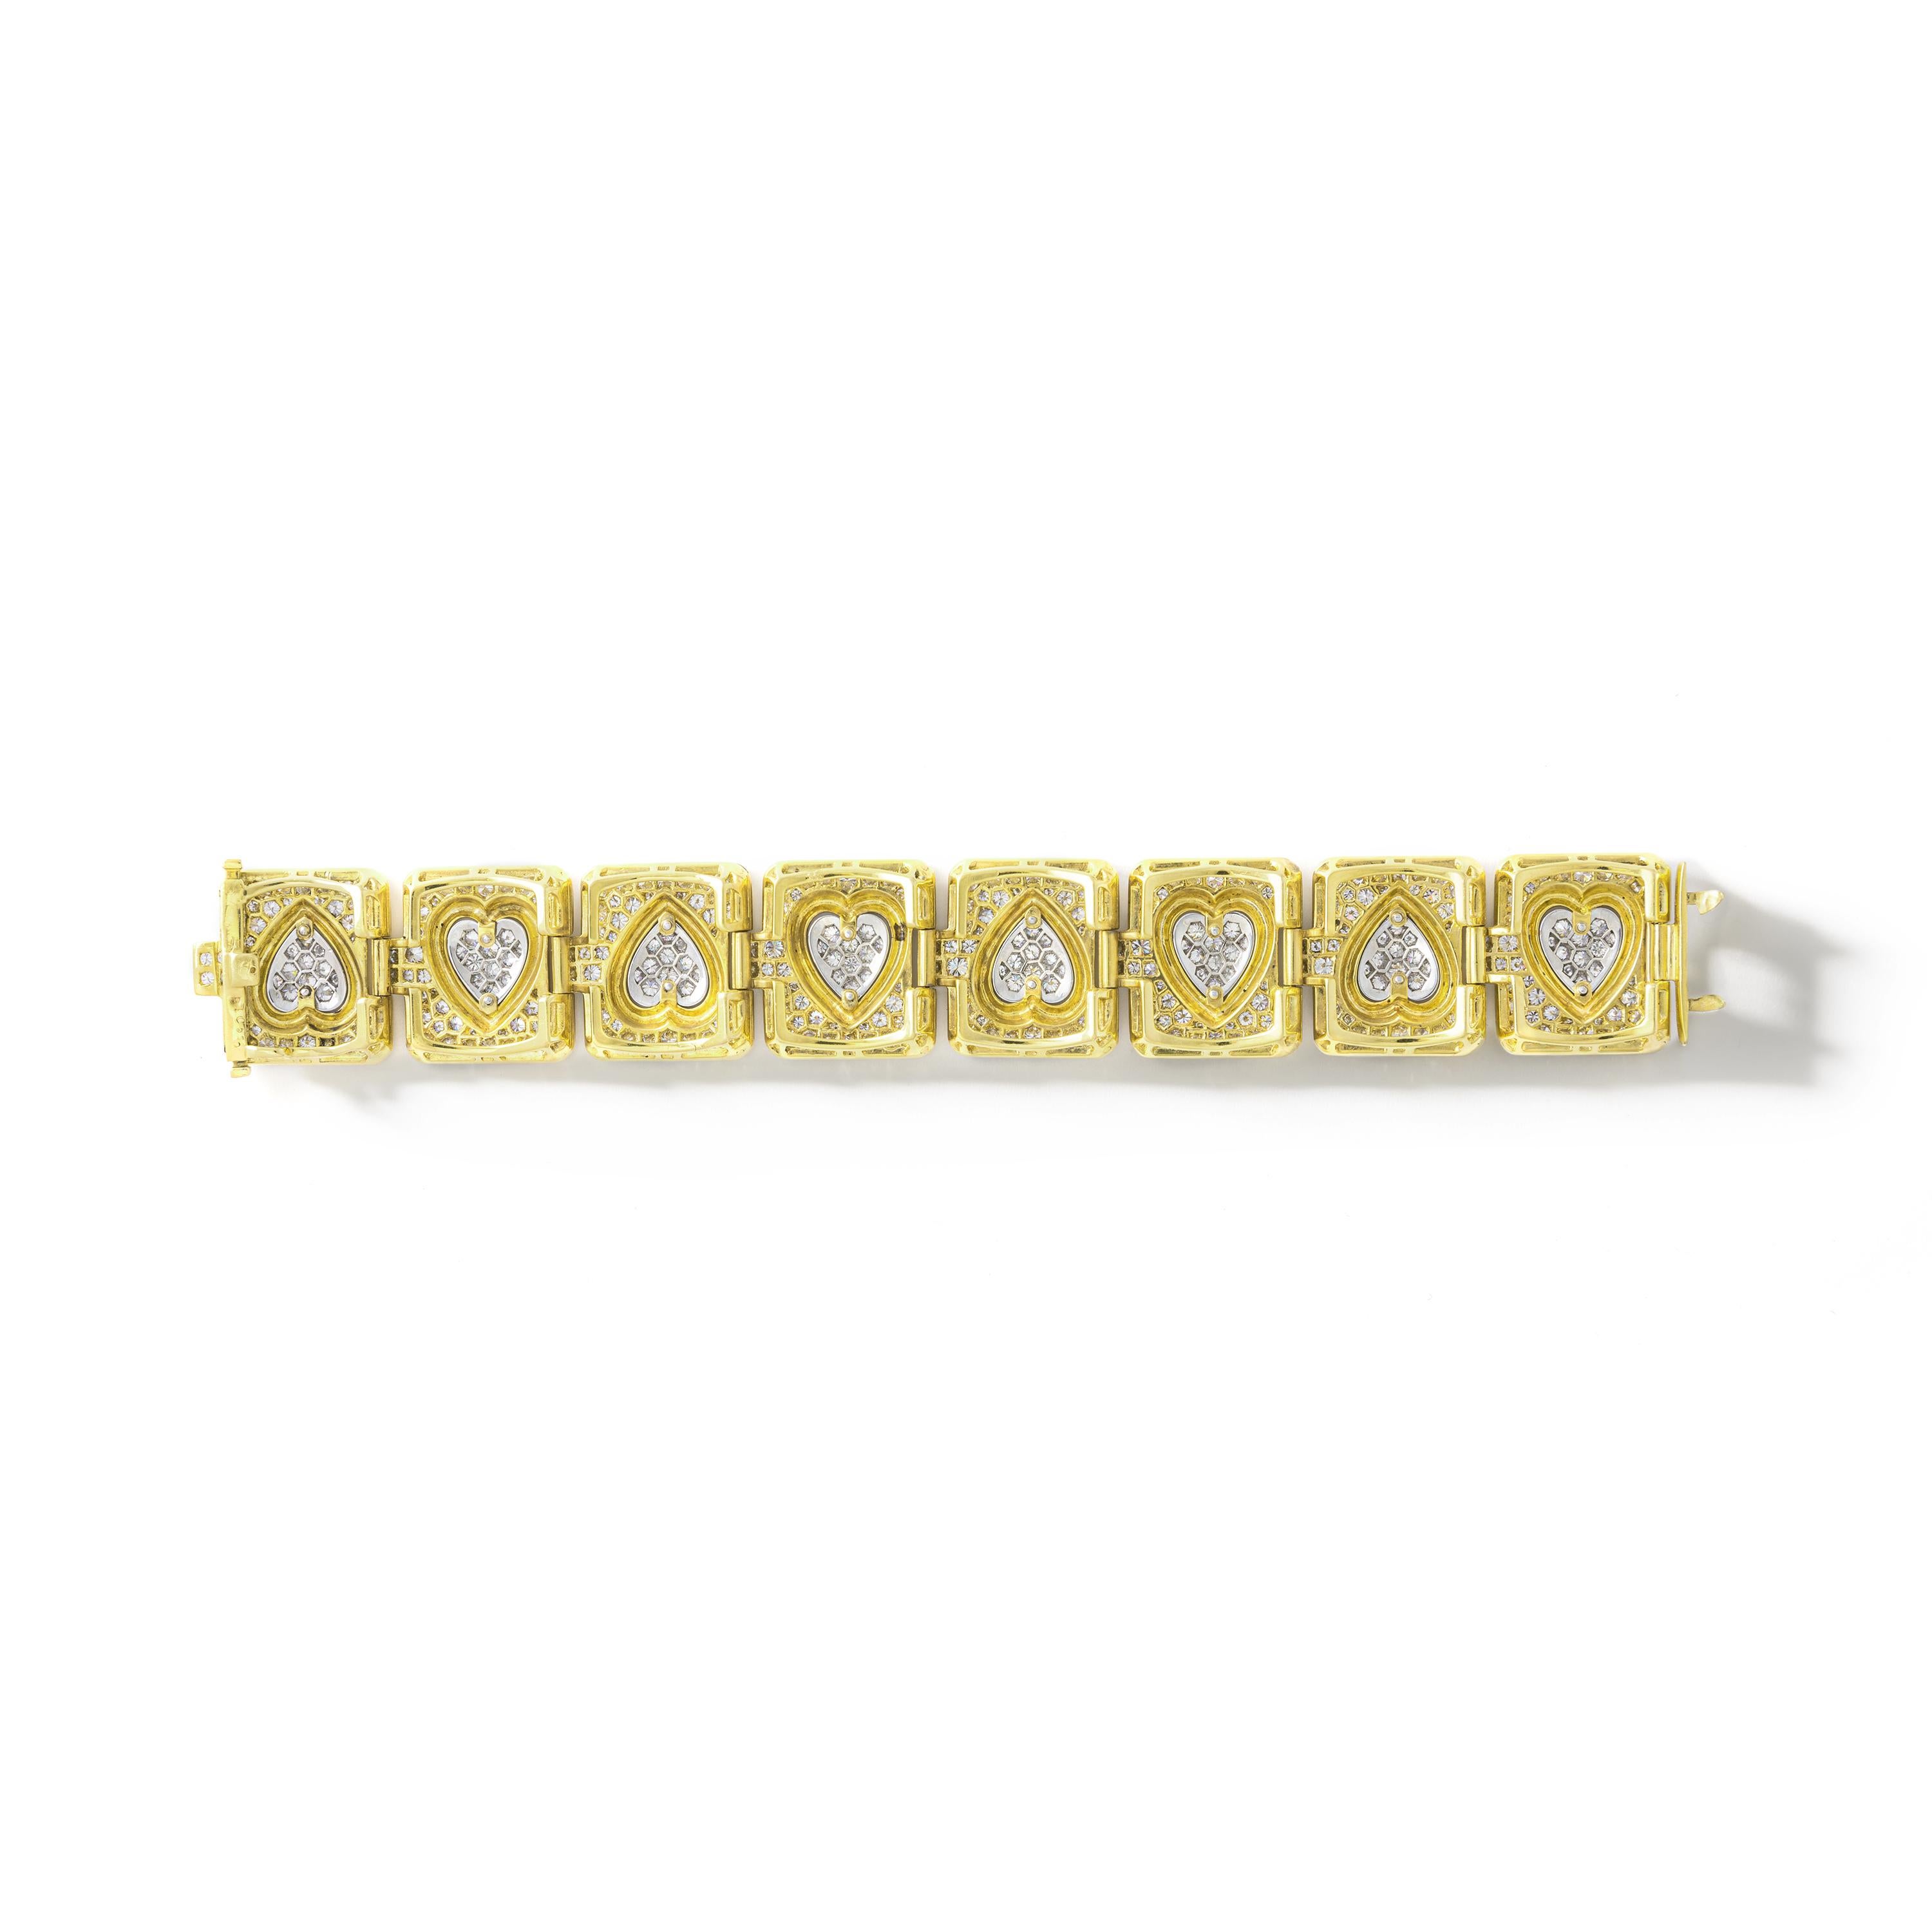 Die Kombination Weiß und Gelb ist wieder da. Wir lieben, lieben und lieben!
Herzformen aus Platin und Diamanten an einem Gelbgoldarmband.
Französische Marken, um 1980.

Gesamtgewicht der Diamanten: ca. 23,00 Karat.

Maßnahmen:
Länge: 18 cm (7,1